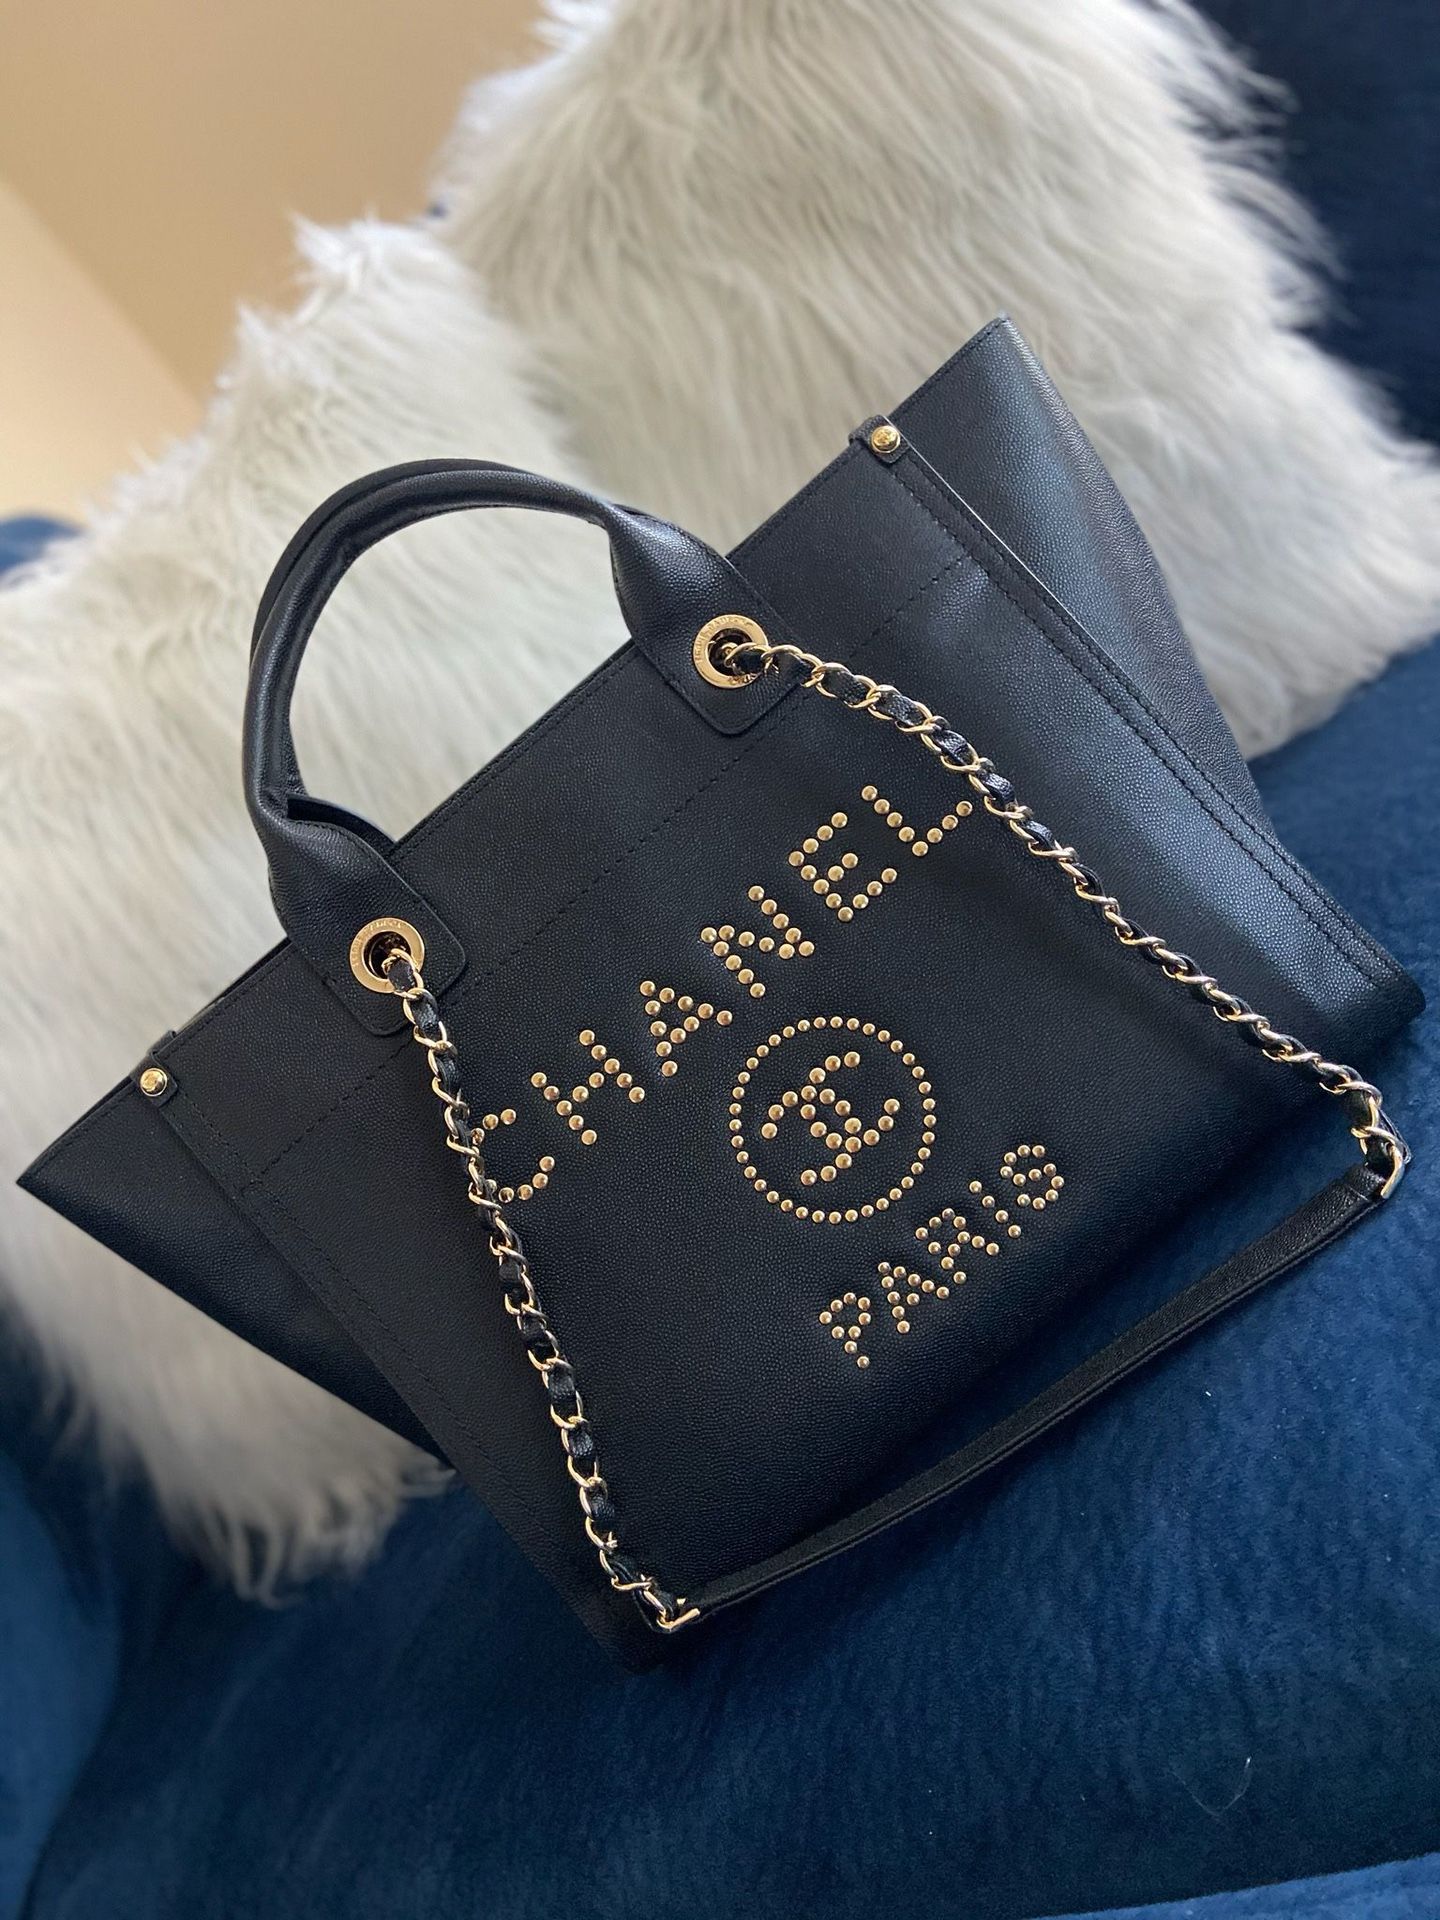 Chanel Big Tote Bag